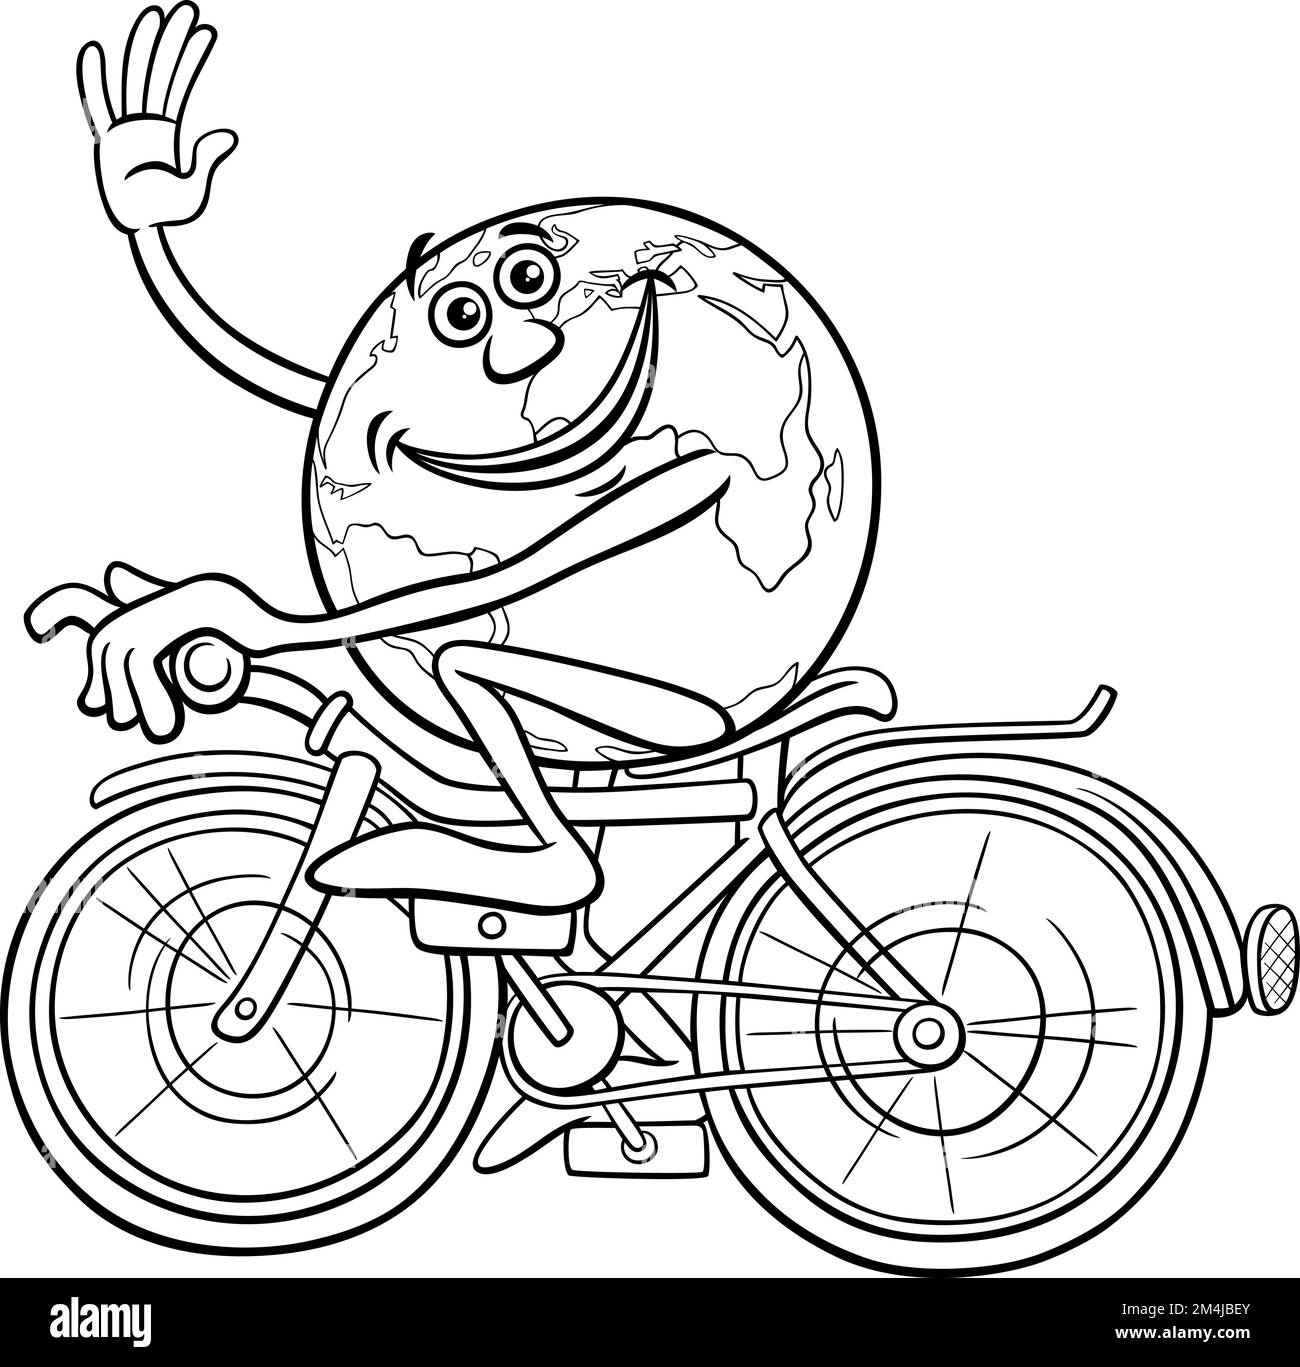 Dessin animé en noir et blanc représentant un personnage de la Terre sur une page de coloriage de vélo Illustration de Vecteur